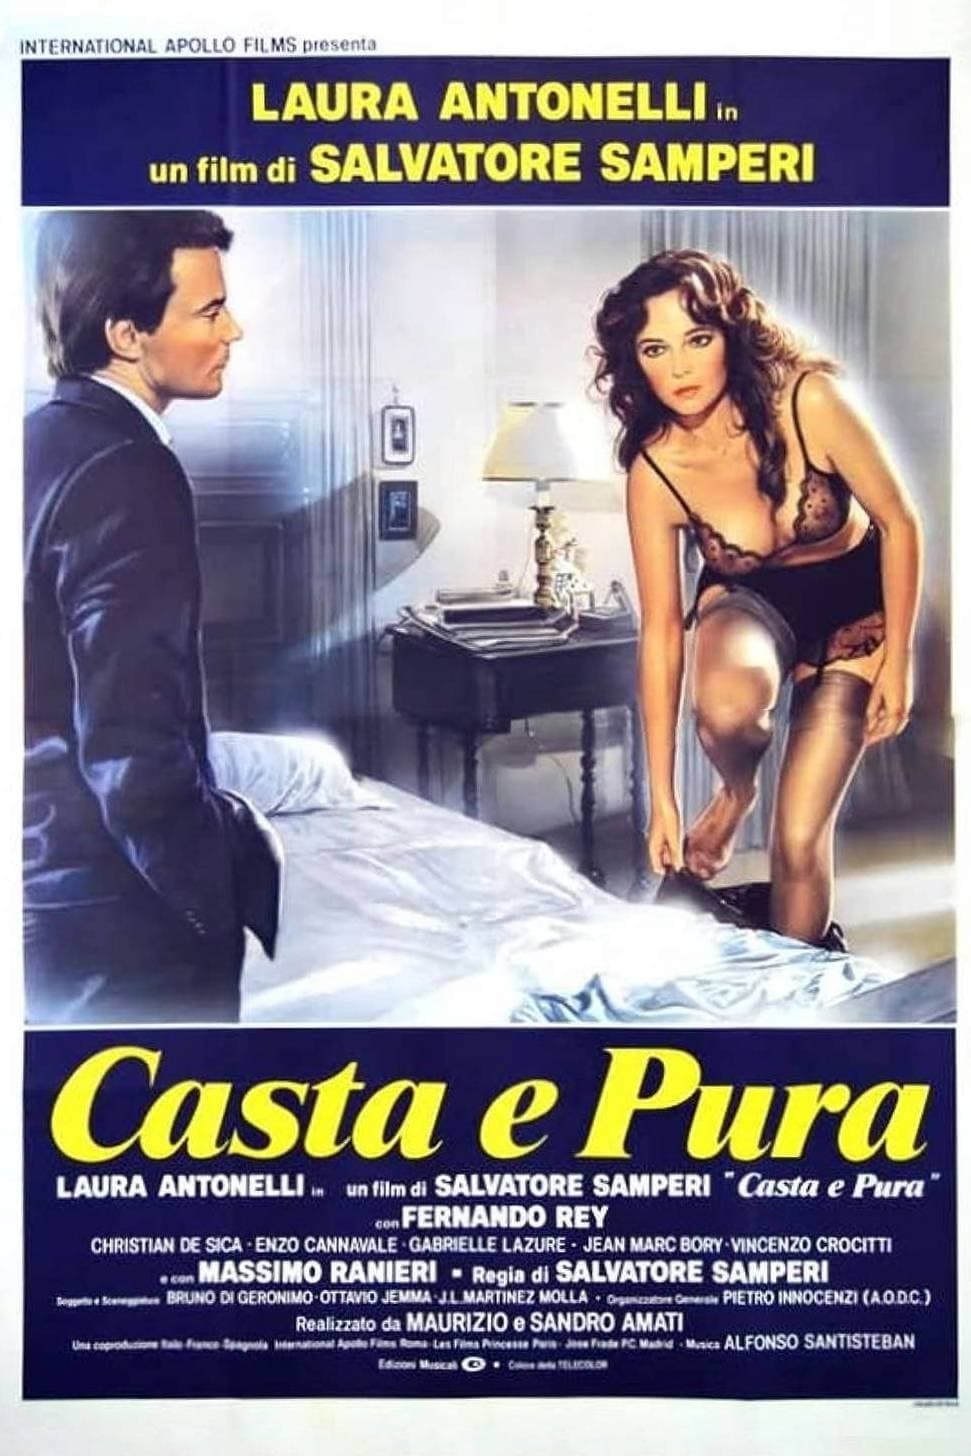 Casta e pura (1981)